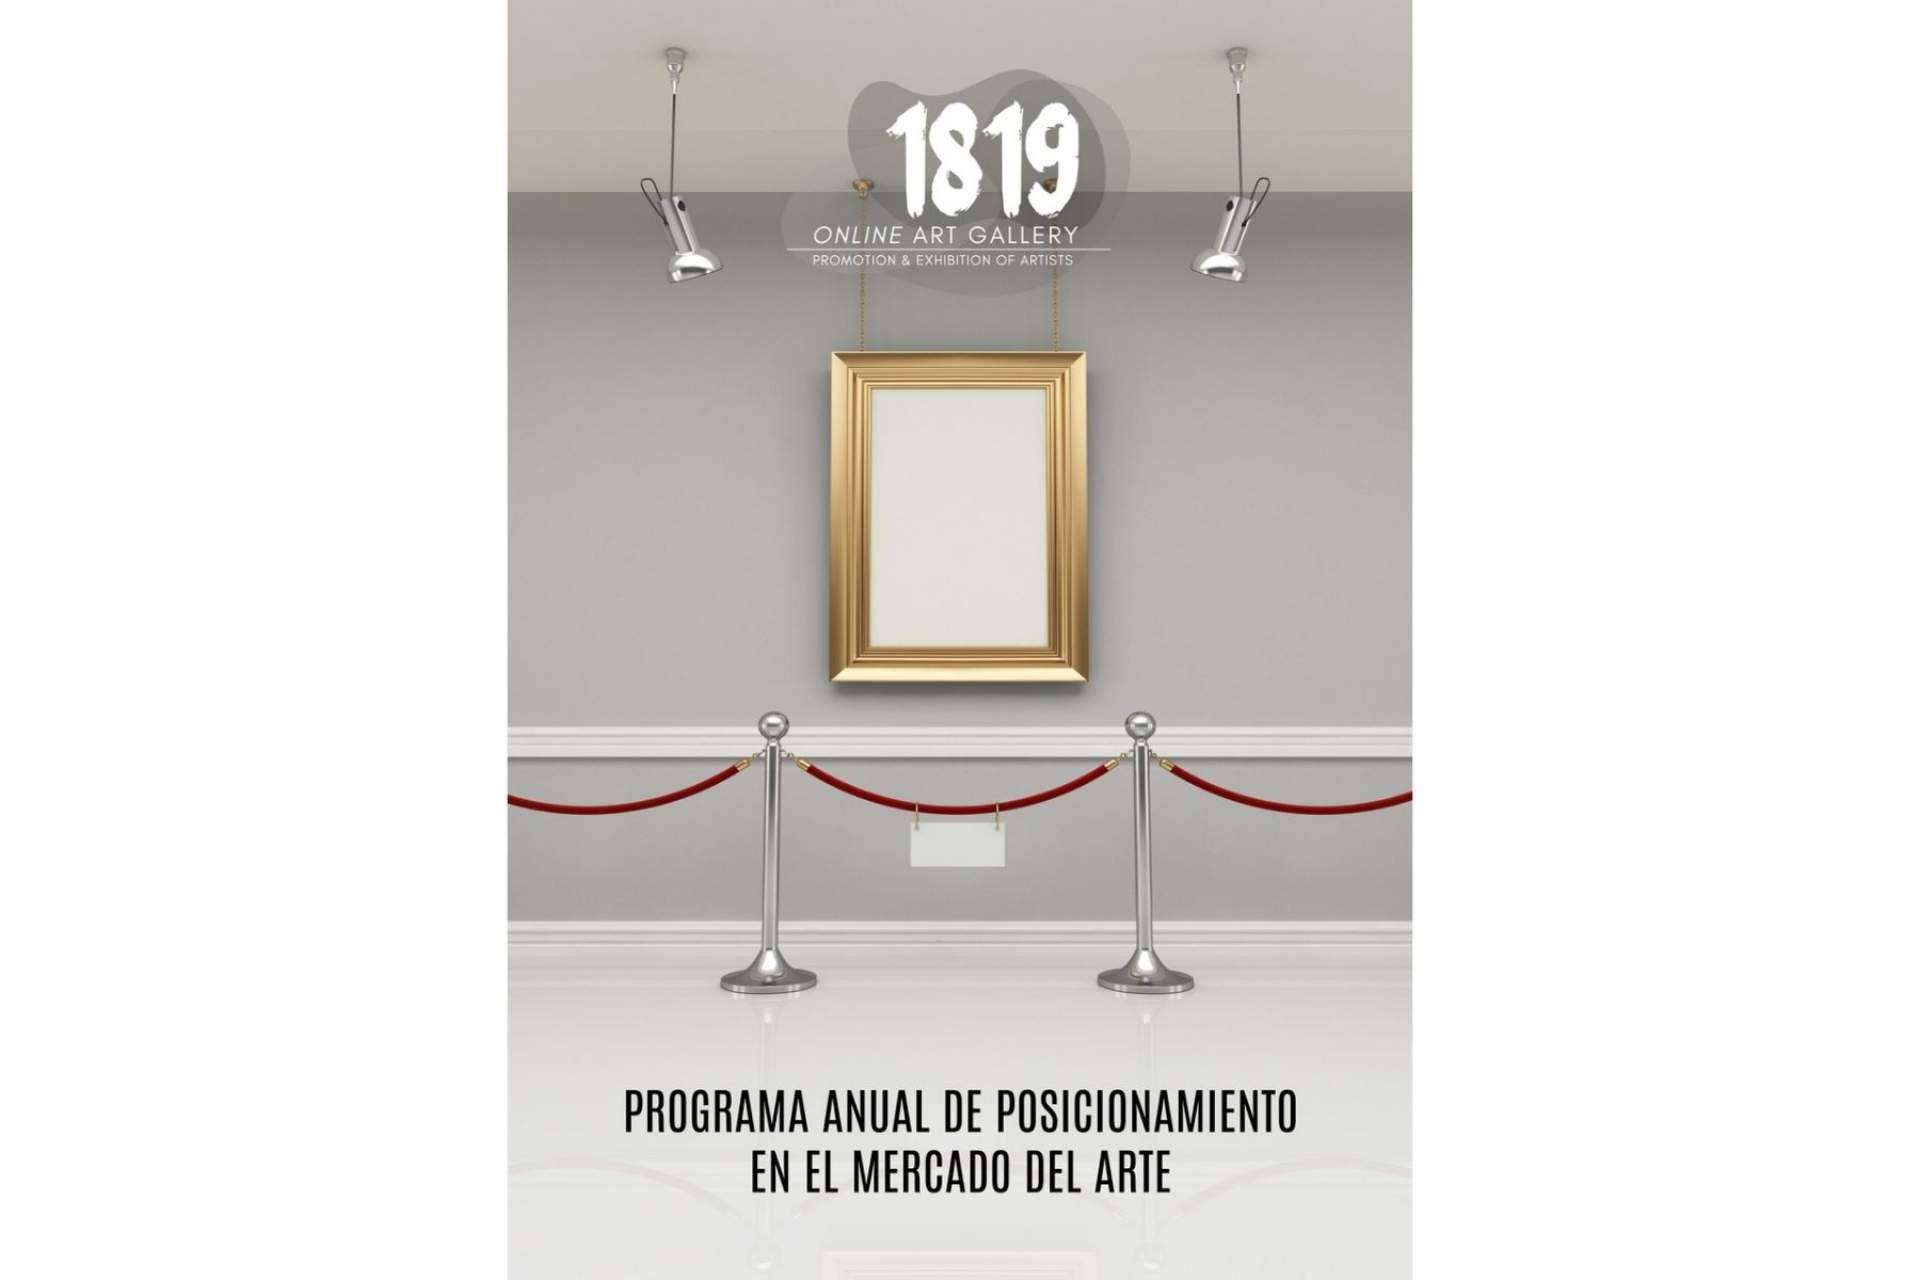  1819 Art Gallery lanza su programa para promocionar la obra de artistas de todo el mundo 